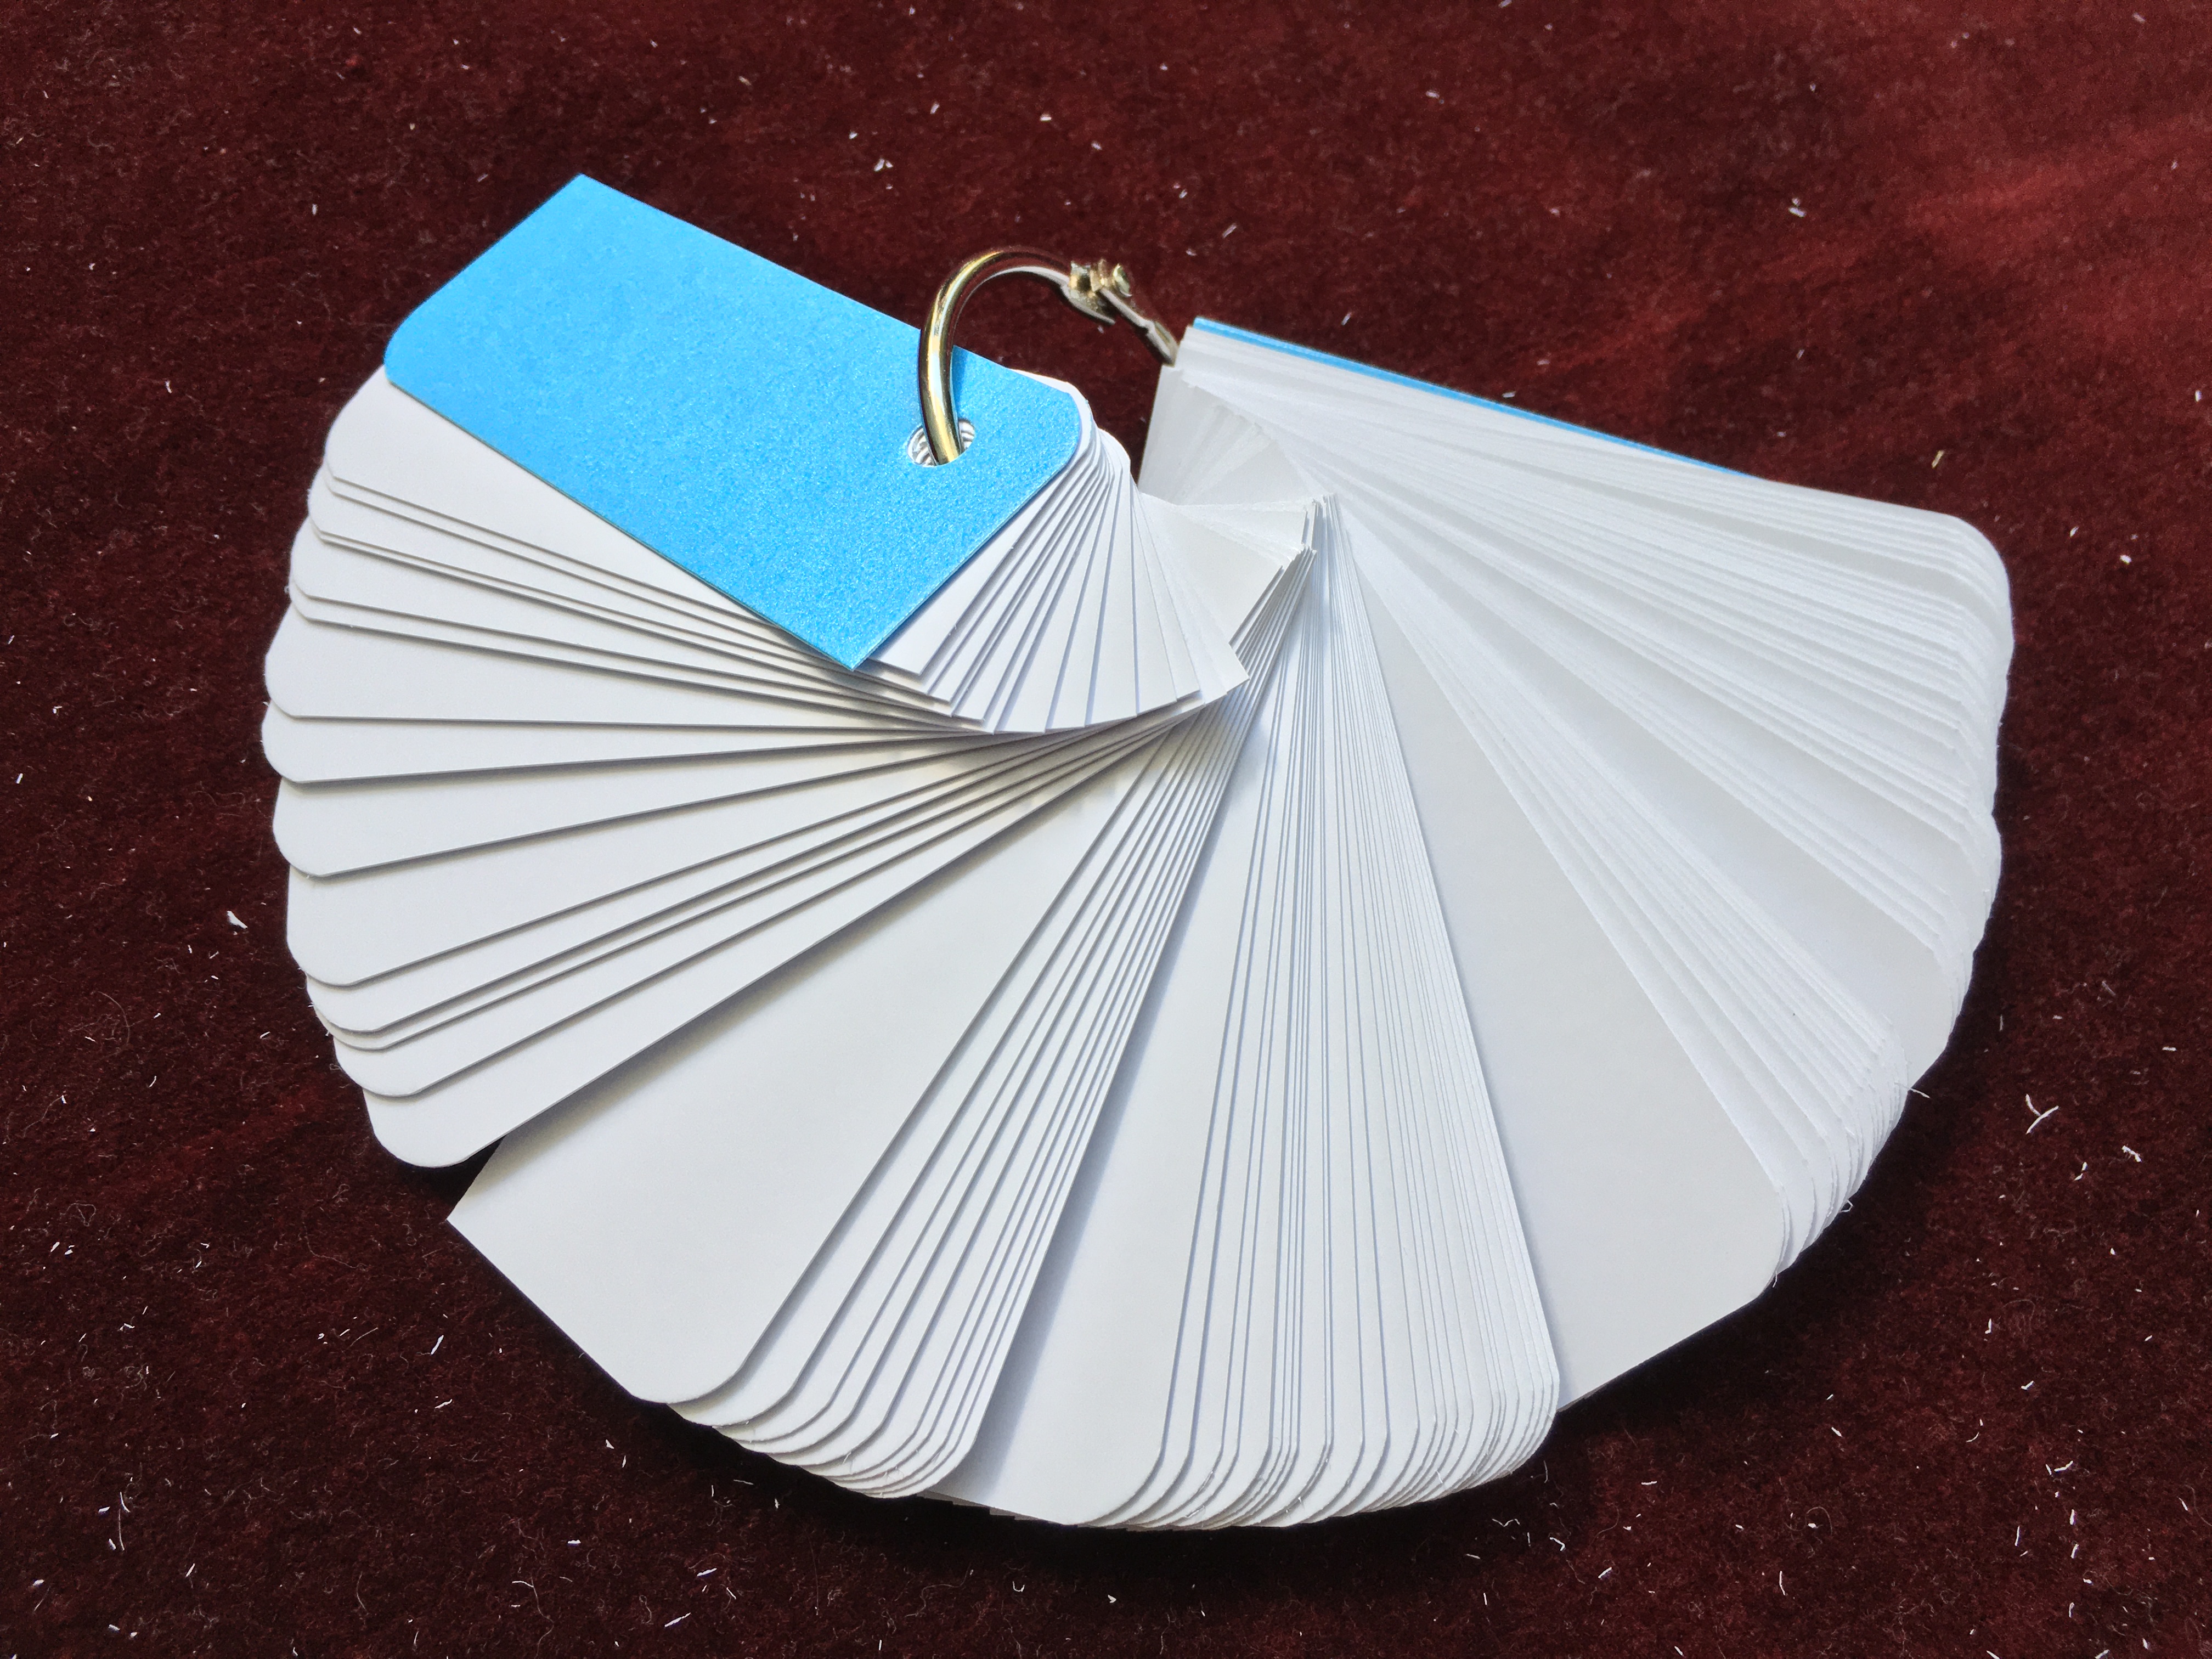 Bộ thẻ trắng 100 thẻ flashcard siêu dày3x8 định lượng ivory 350gsm//bristol 350gsm tặng kèm khoen 4cm và bìa ánh kim dùng để ghi chú, học từ vựng và các công thức cần ghi nhớ (giấy giao ngẫu nhiên ivory hoặc bristol)